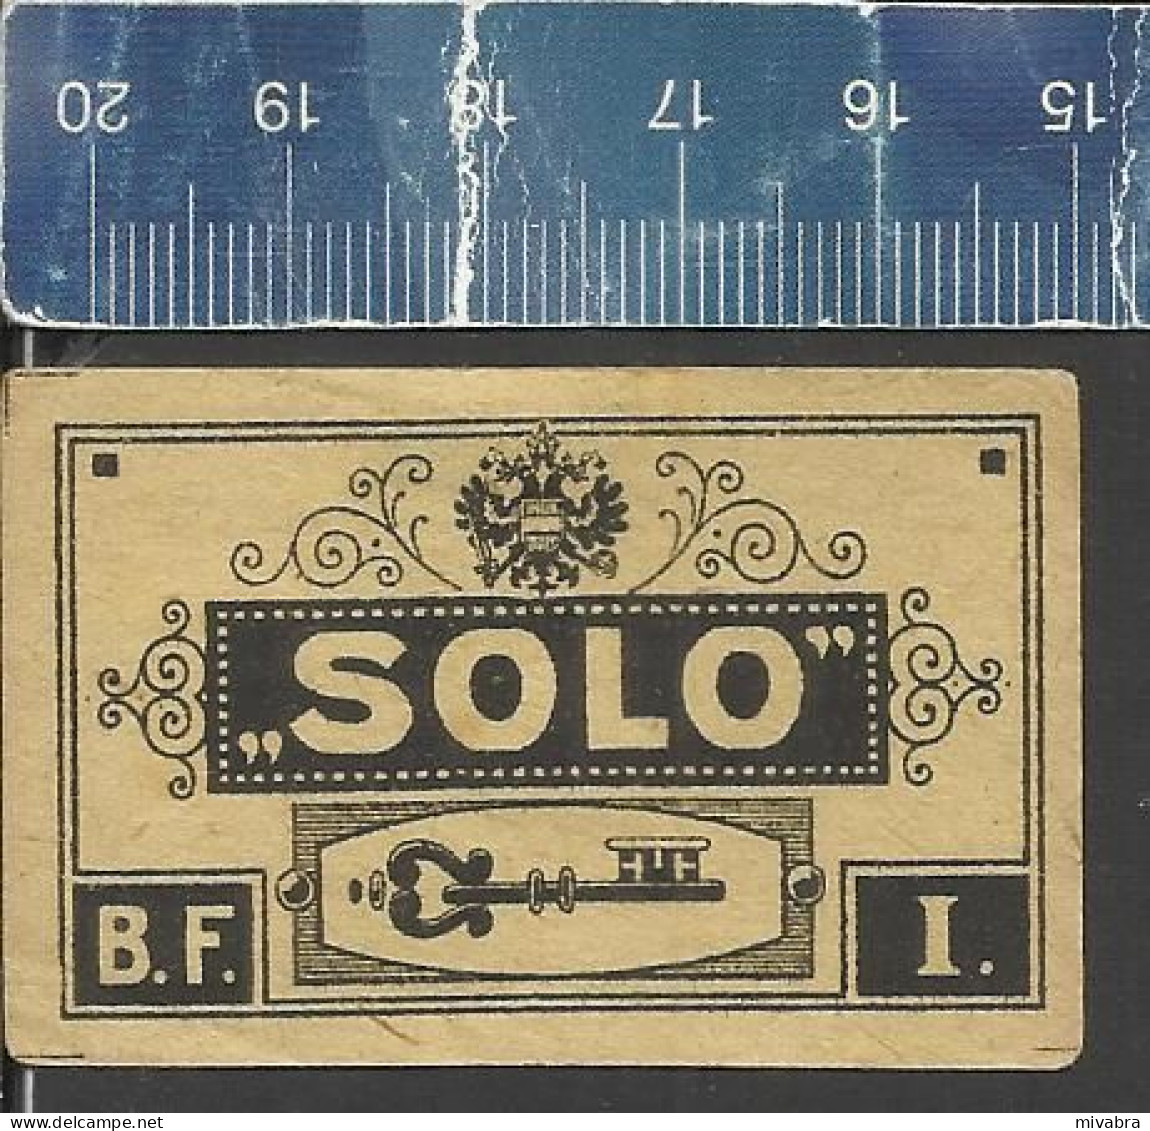 SOLO  - B.F. I. ( KEY CLÉ SCHLÜSSEL SLEUTEL ) - OLD VINTAGE CZECHOSLOVAKIAN MATCHBOX LABEL - Boites D'allumettes - Etiquettes